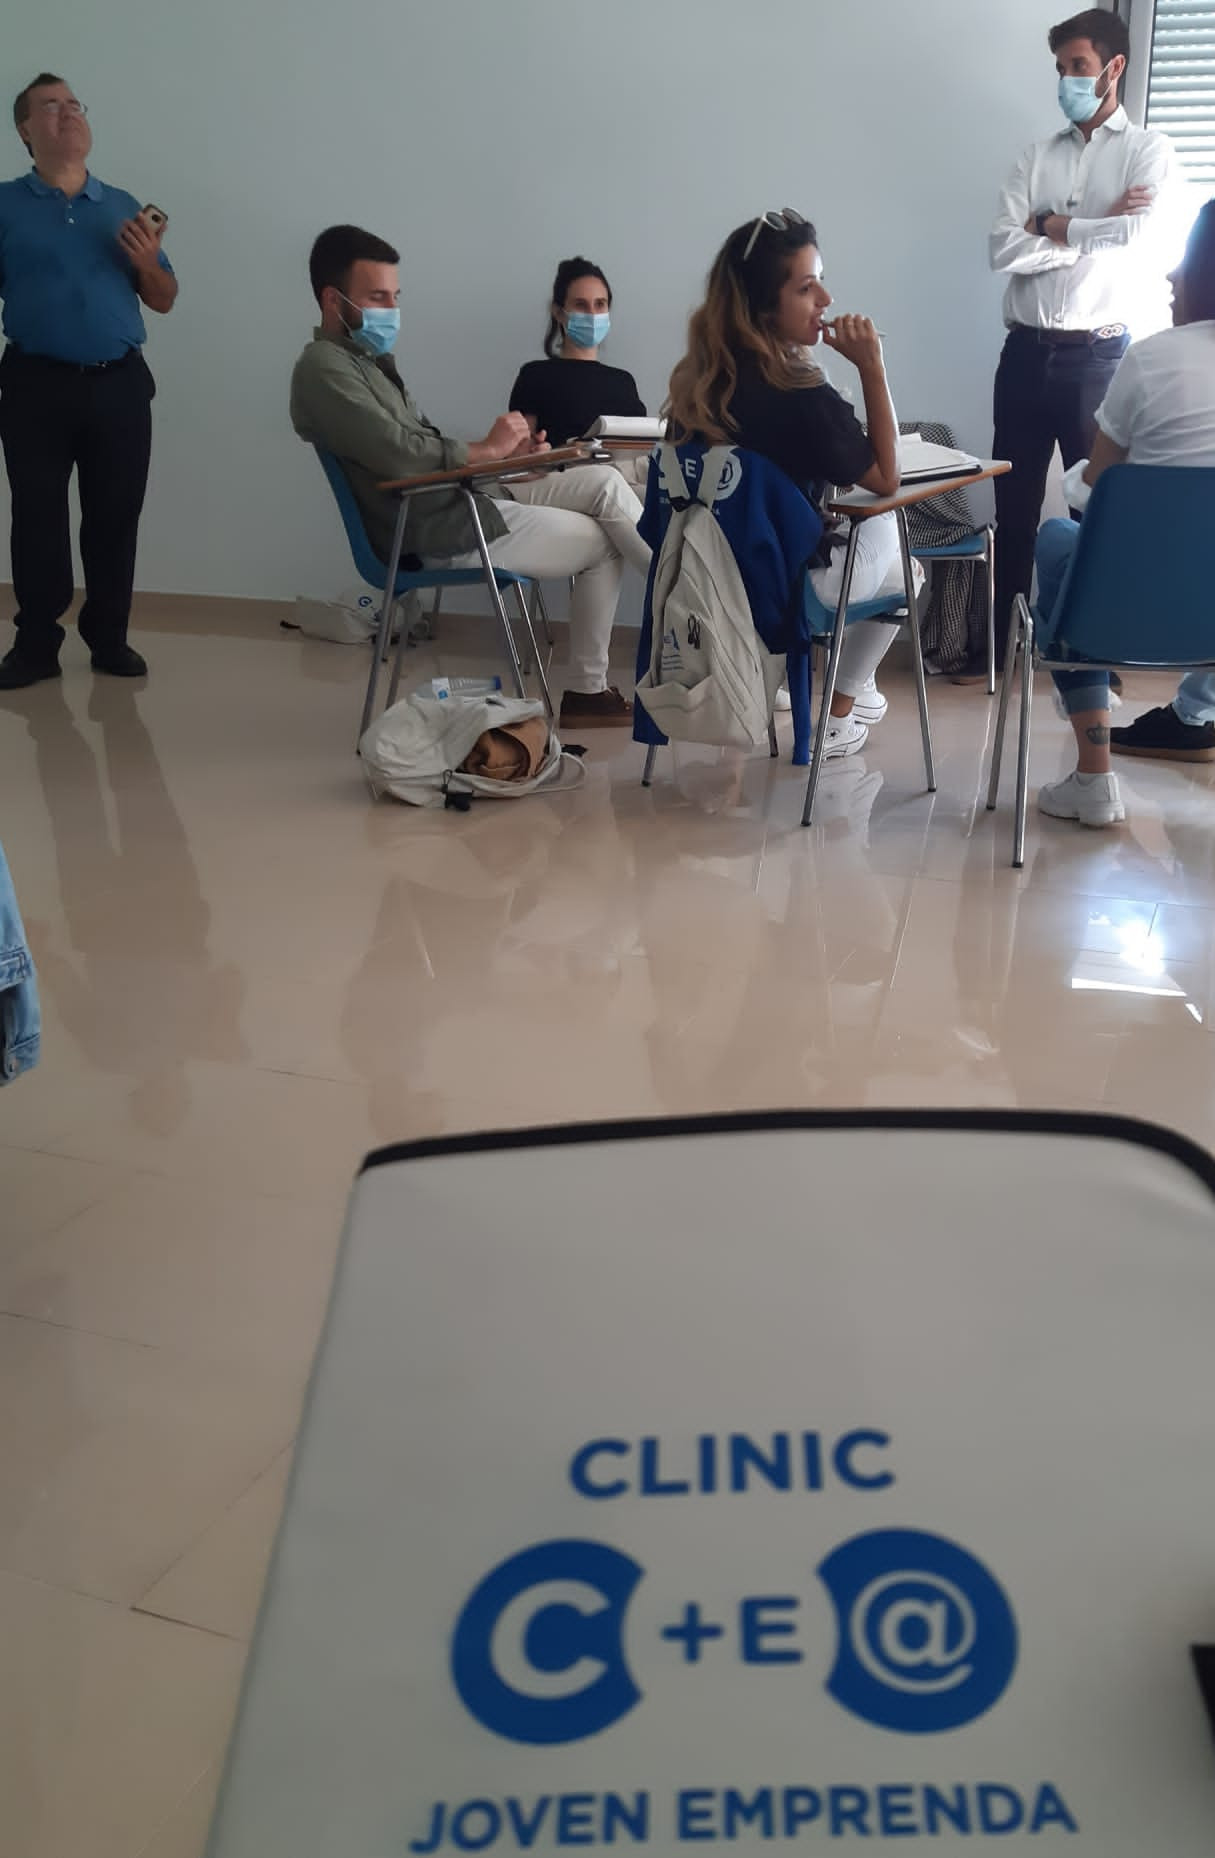 Clinic Joven emprenda Sesión Negociación Chema